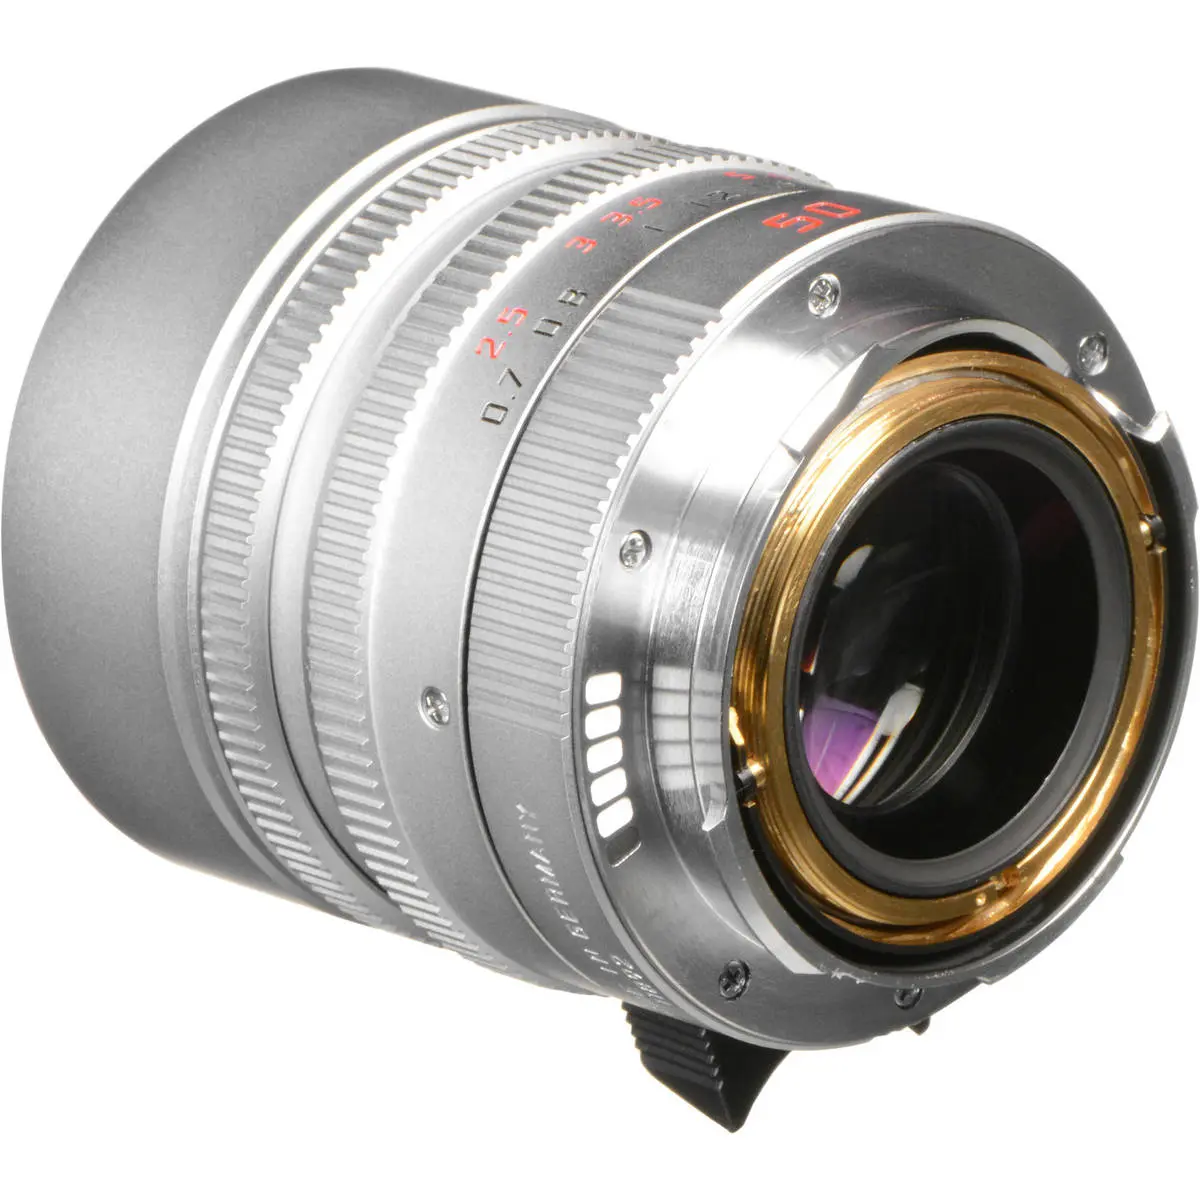 2. LEICA SUMMILUX-M 50 mm f/1.4 ASPH Silver Lens